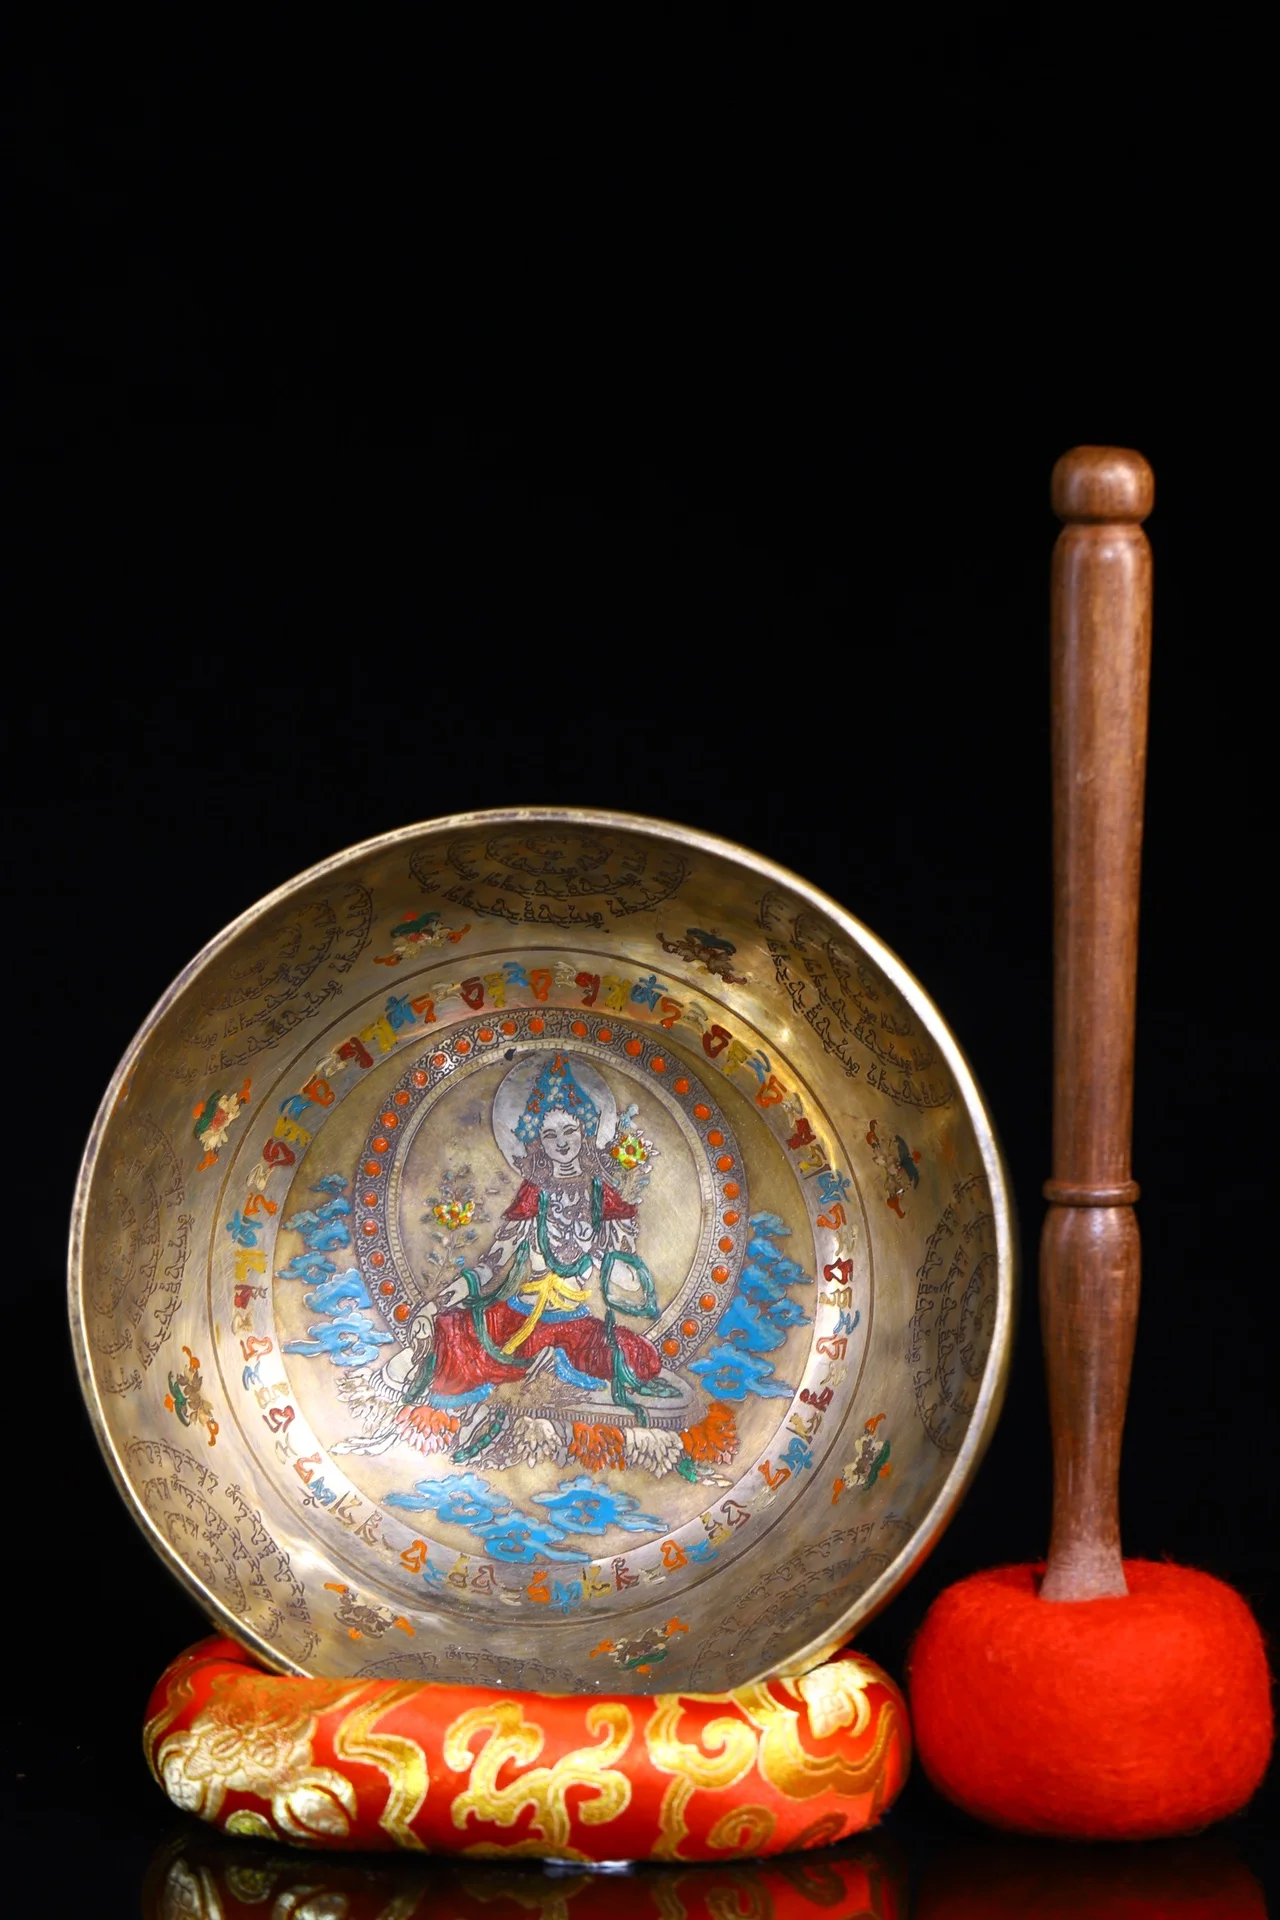 

Коллекция тибетских храмов 8 дюймов, старинная бронзовая окрашенная Зеленая Тара, миска для выращивания музыки в буддистском стиле, поклонение в зале, городской Экзорцизм